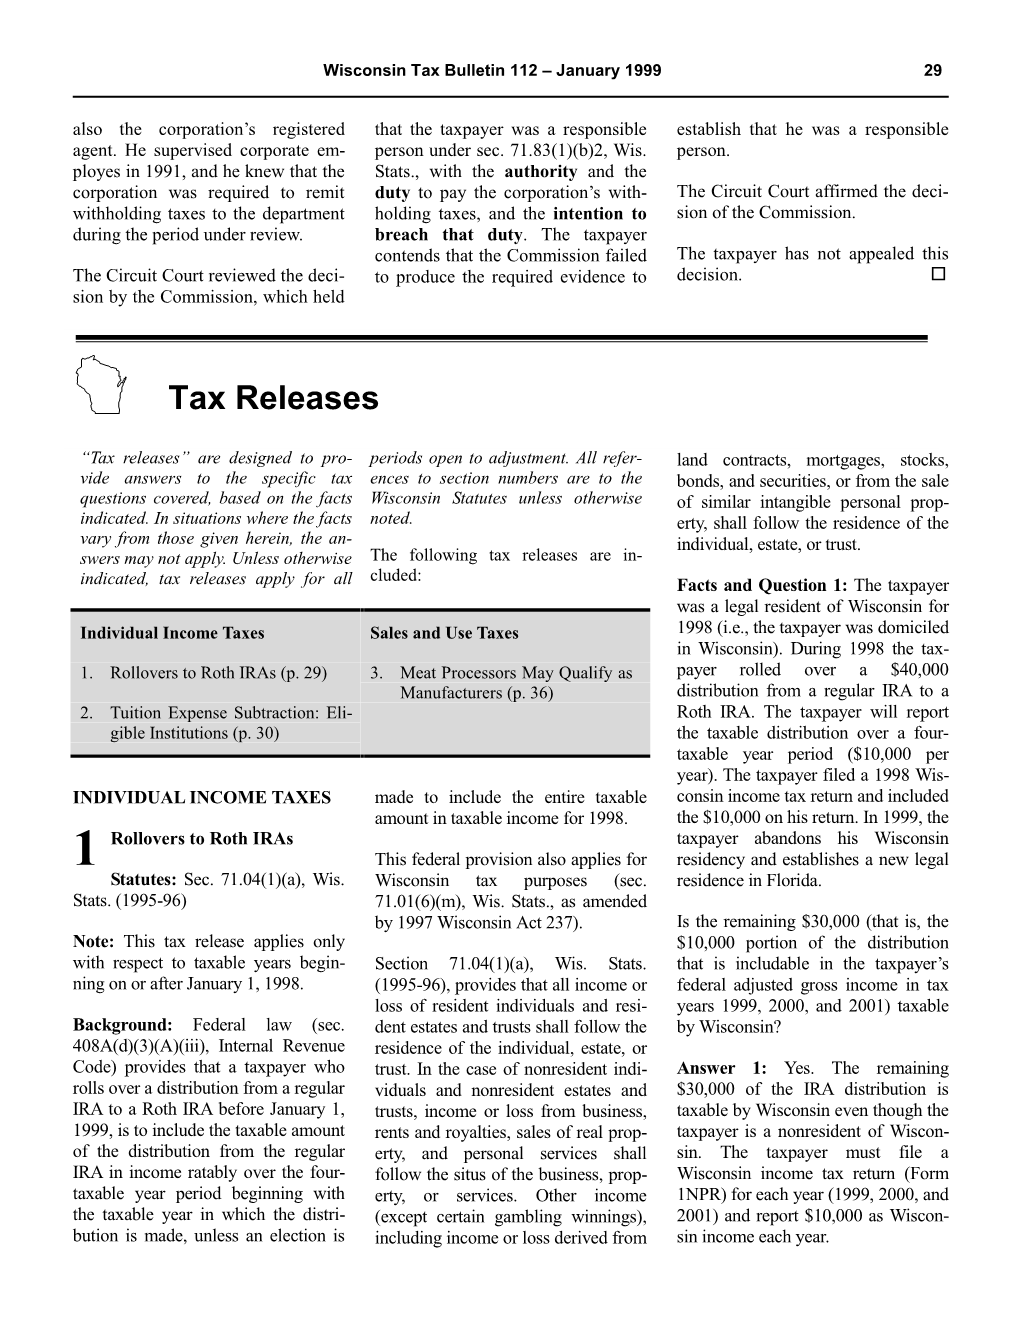 WTB No. 112 (Tax Releases